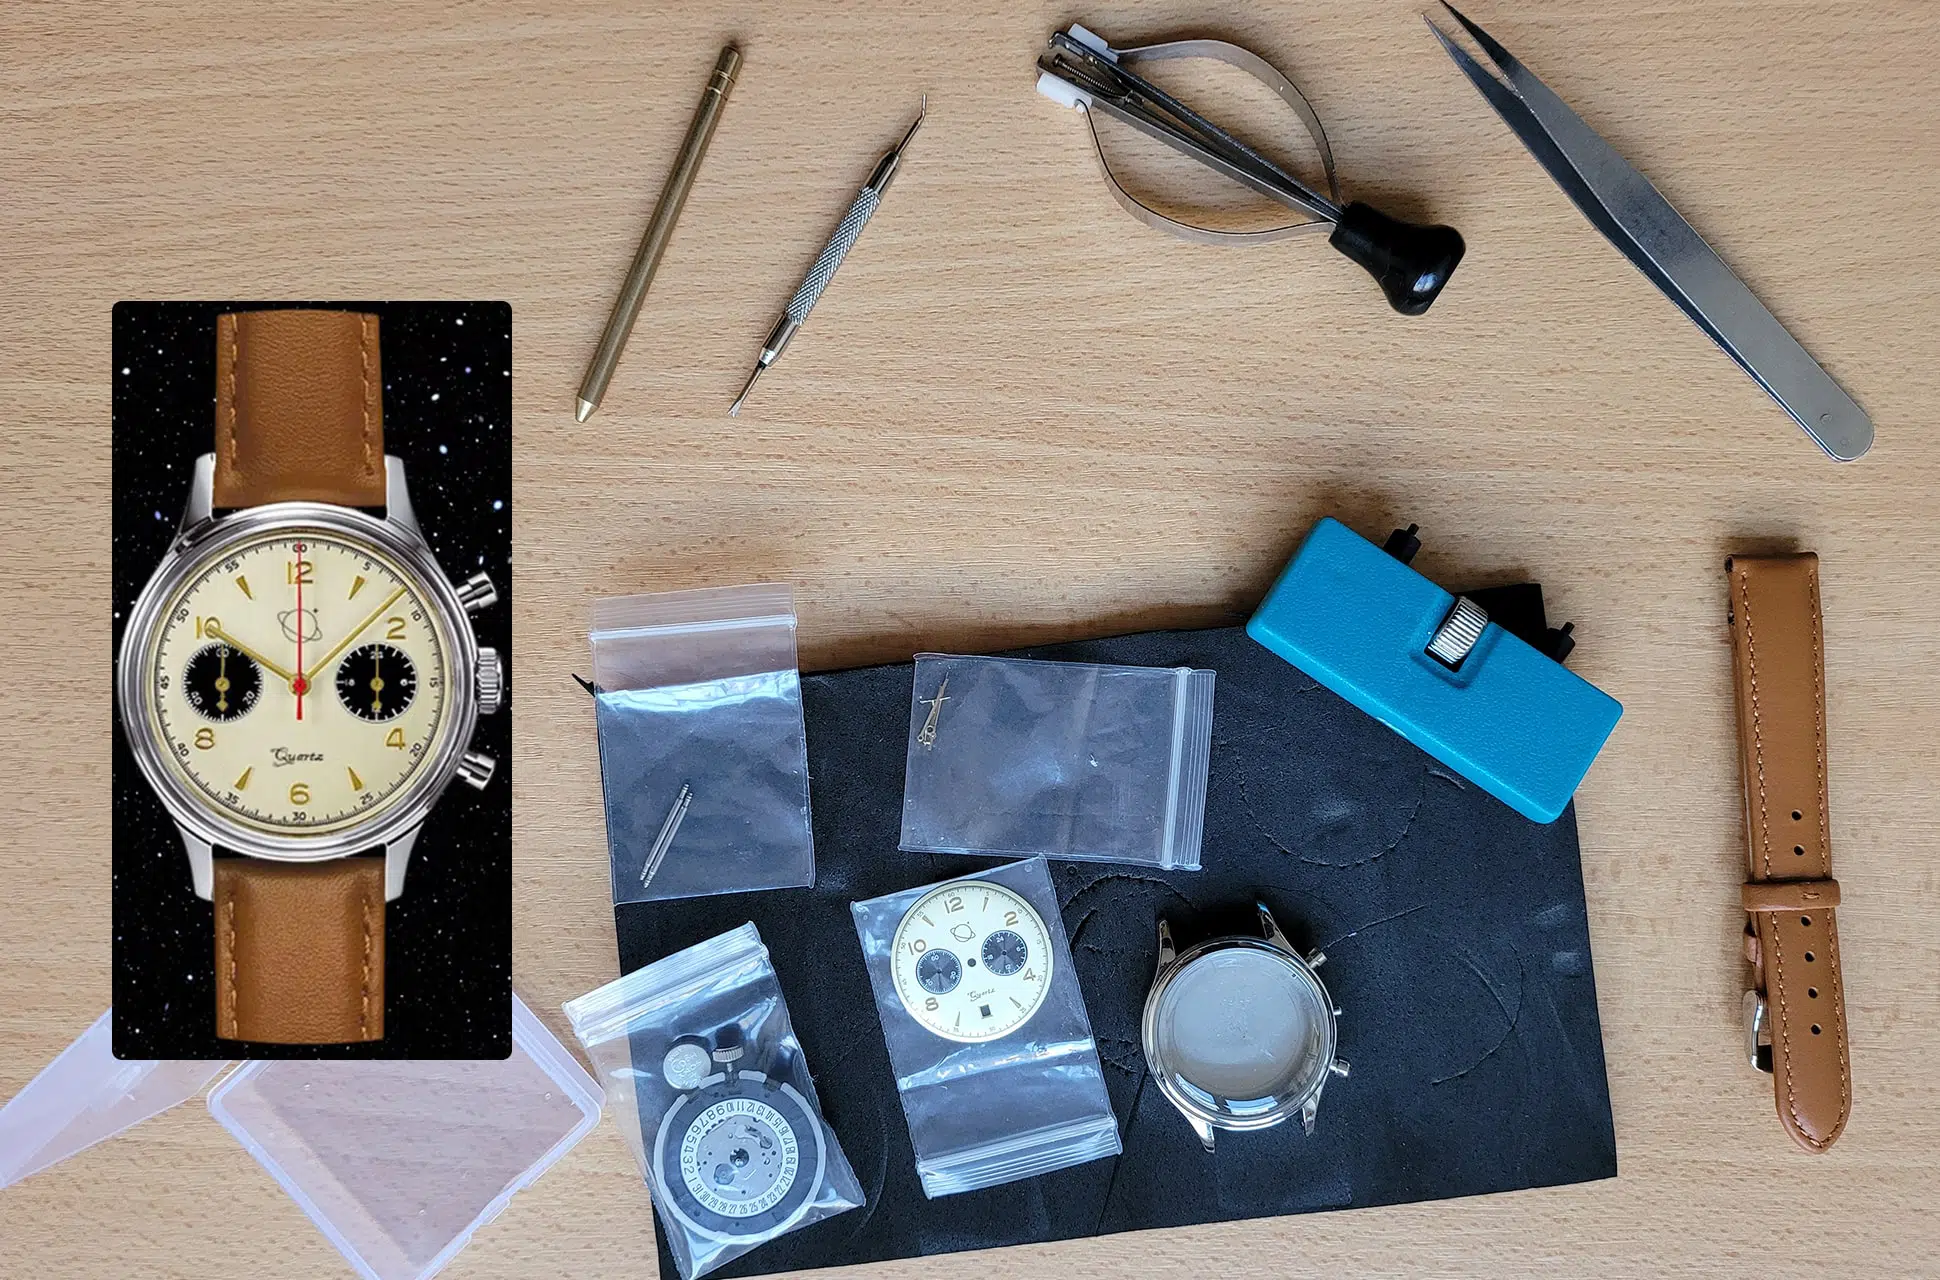 AstroMYO MK2 pour assembler un chronographe : Test & Avis